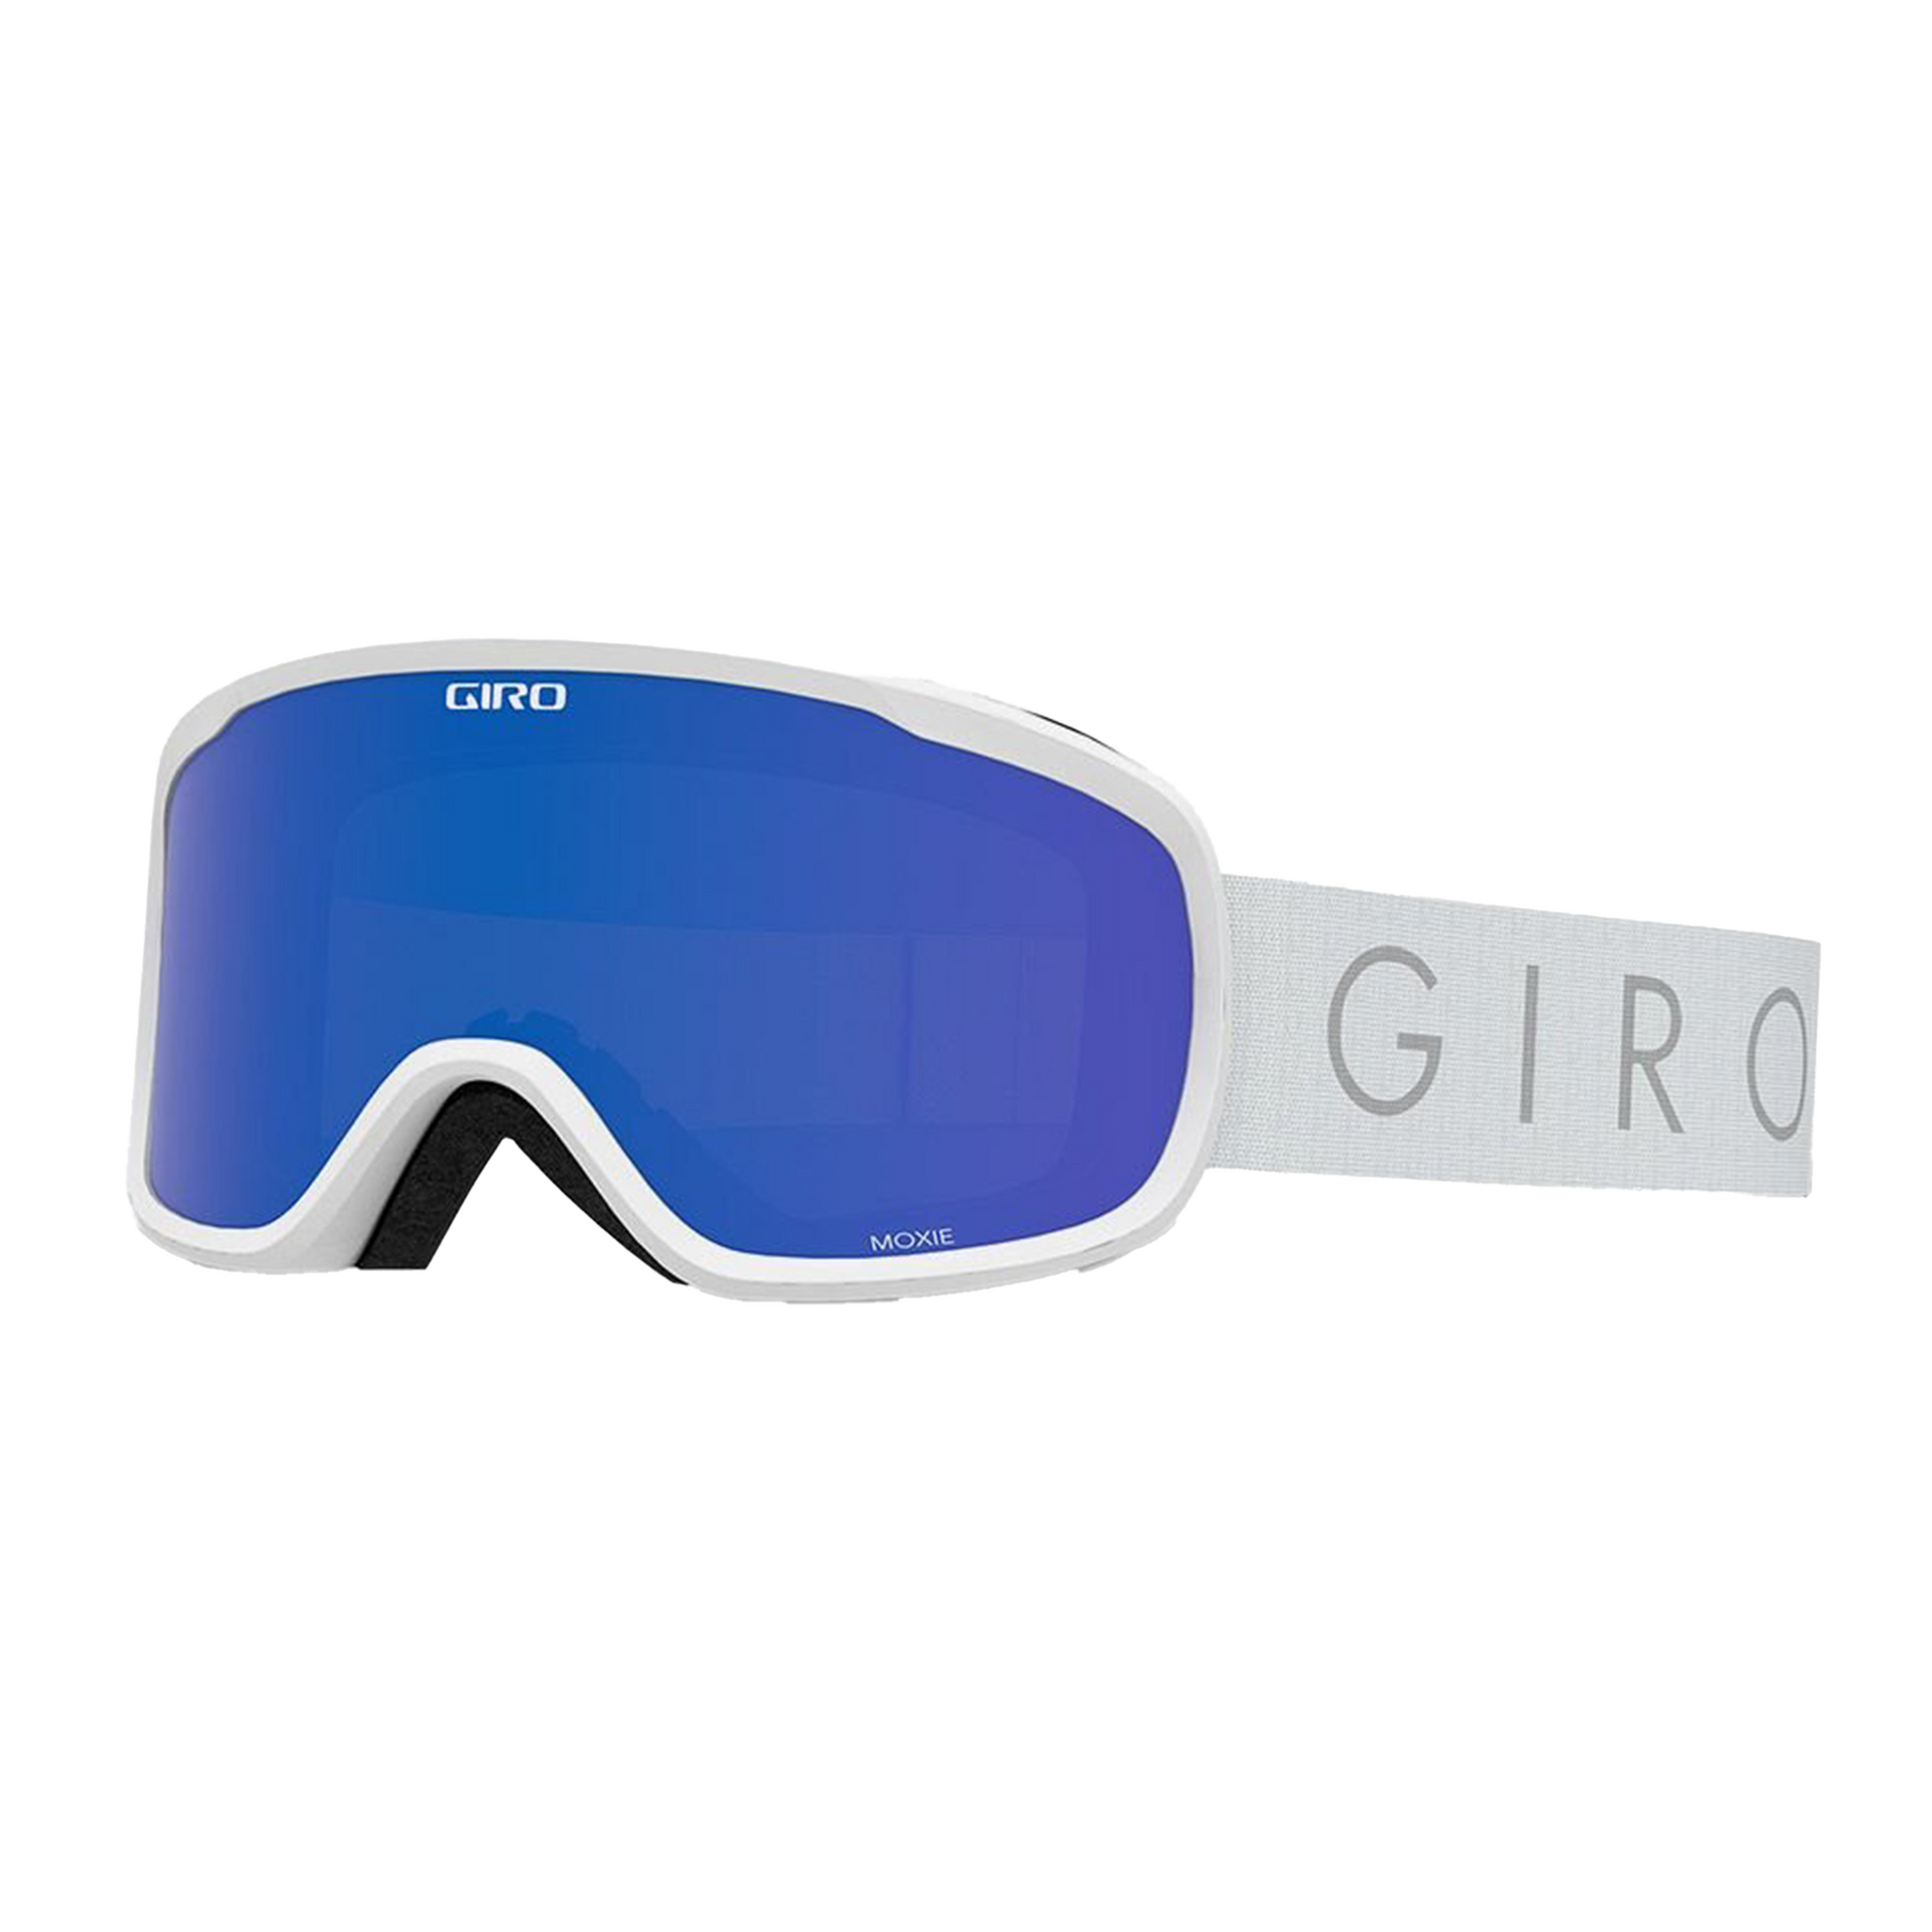 Giro Women's Moxie Snow Goggle - Openbox White Core Light Grey Cobalt Yellow - Giro Snow Snow Goggles